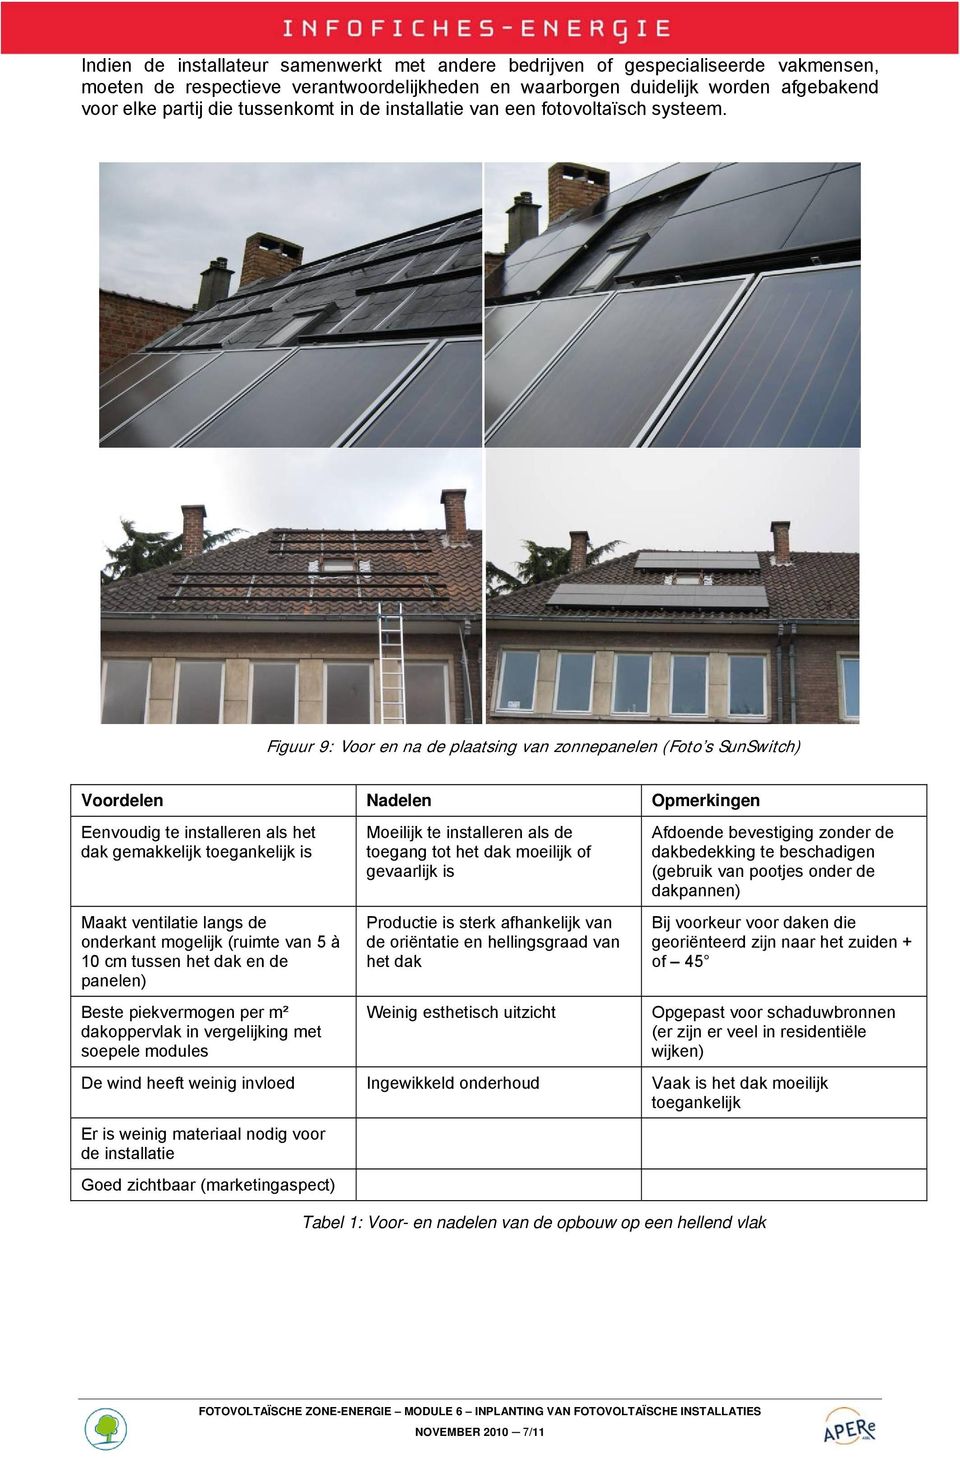 Figuur 9: Voor en na de plaatsing van zonnepanelen (Foto s SunSwitch) Voordelen Nadelen Opmerkingen Eenvoudig te installeren als het dak gemakkelijk toegankelijk is Maakt ventilatie langs de